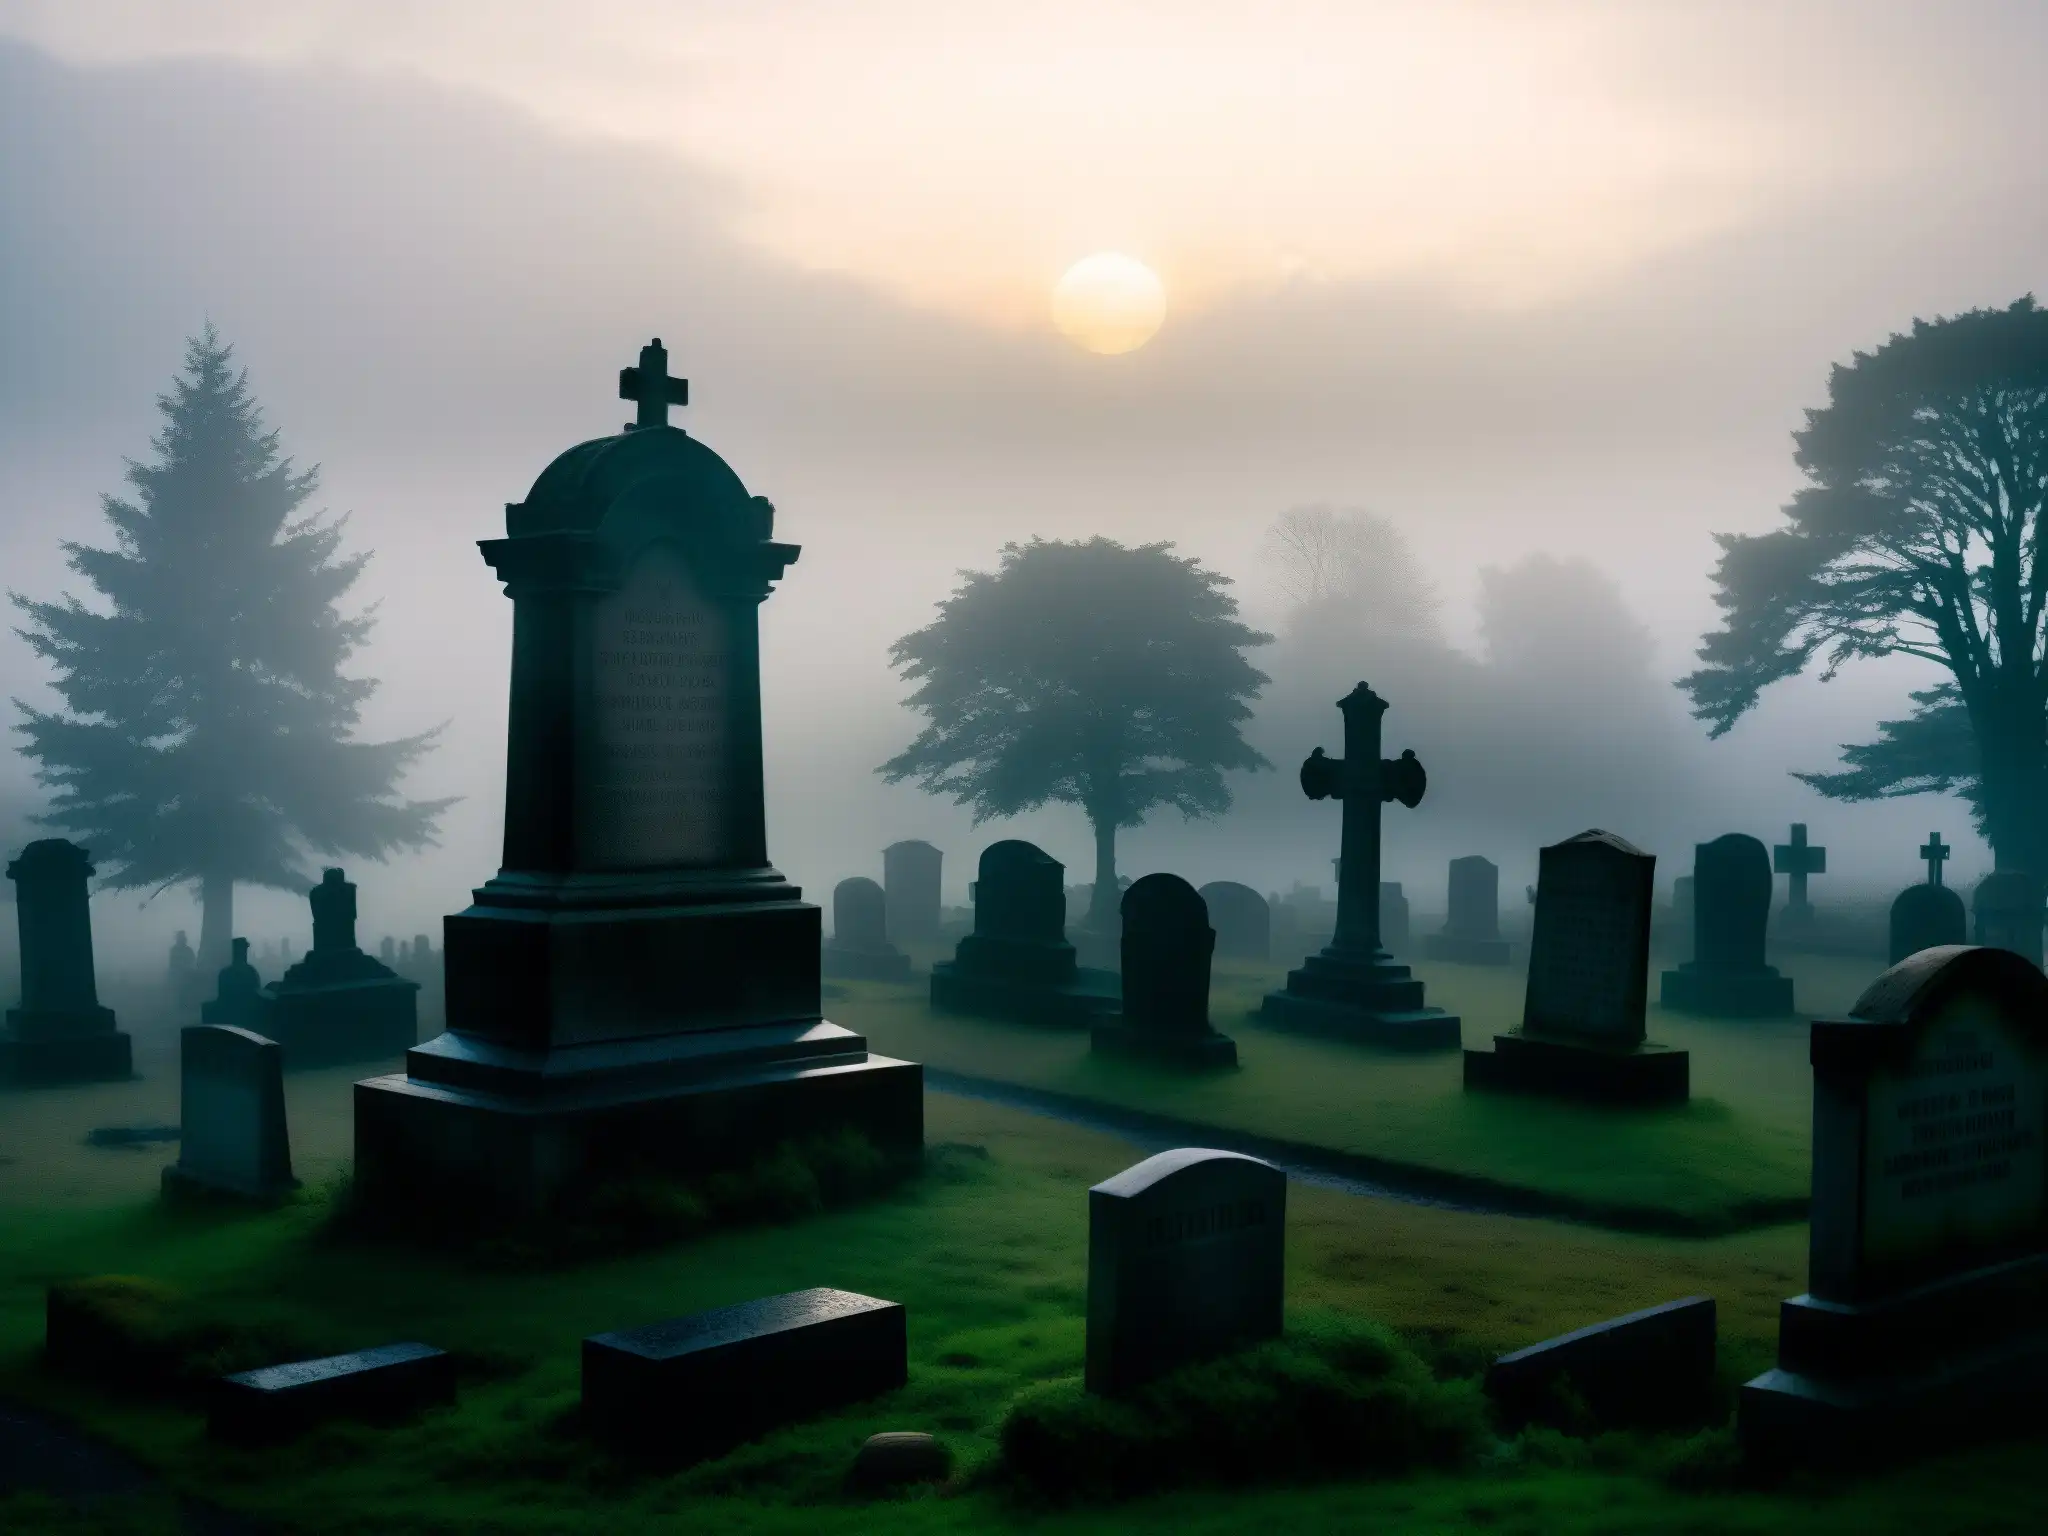 Presencia del Más Allá en Cementerio Lothian: Atmósfera misteriosa con tumbas antiguas envueltas en niebla y una figura en silueta